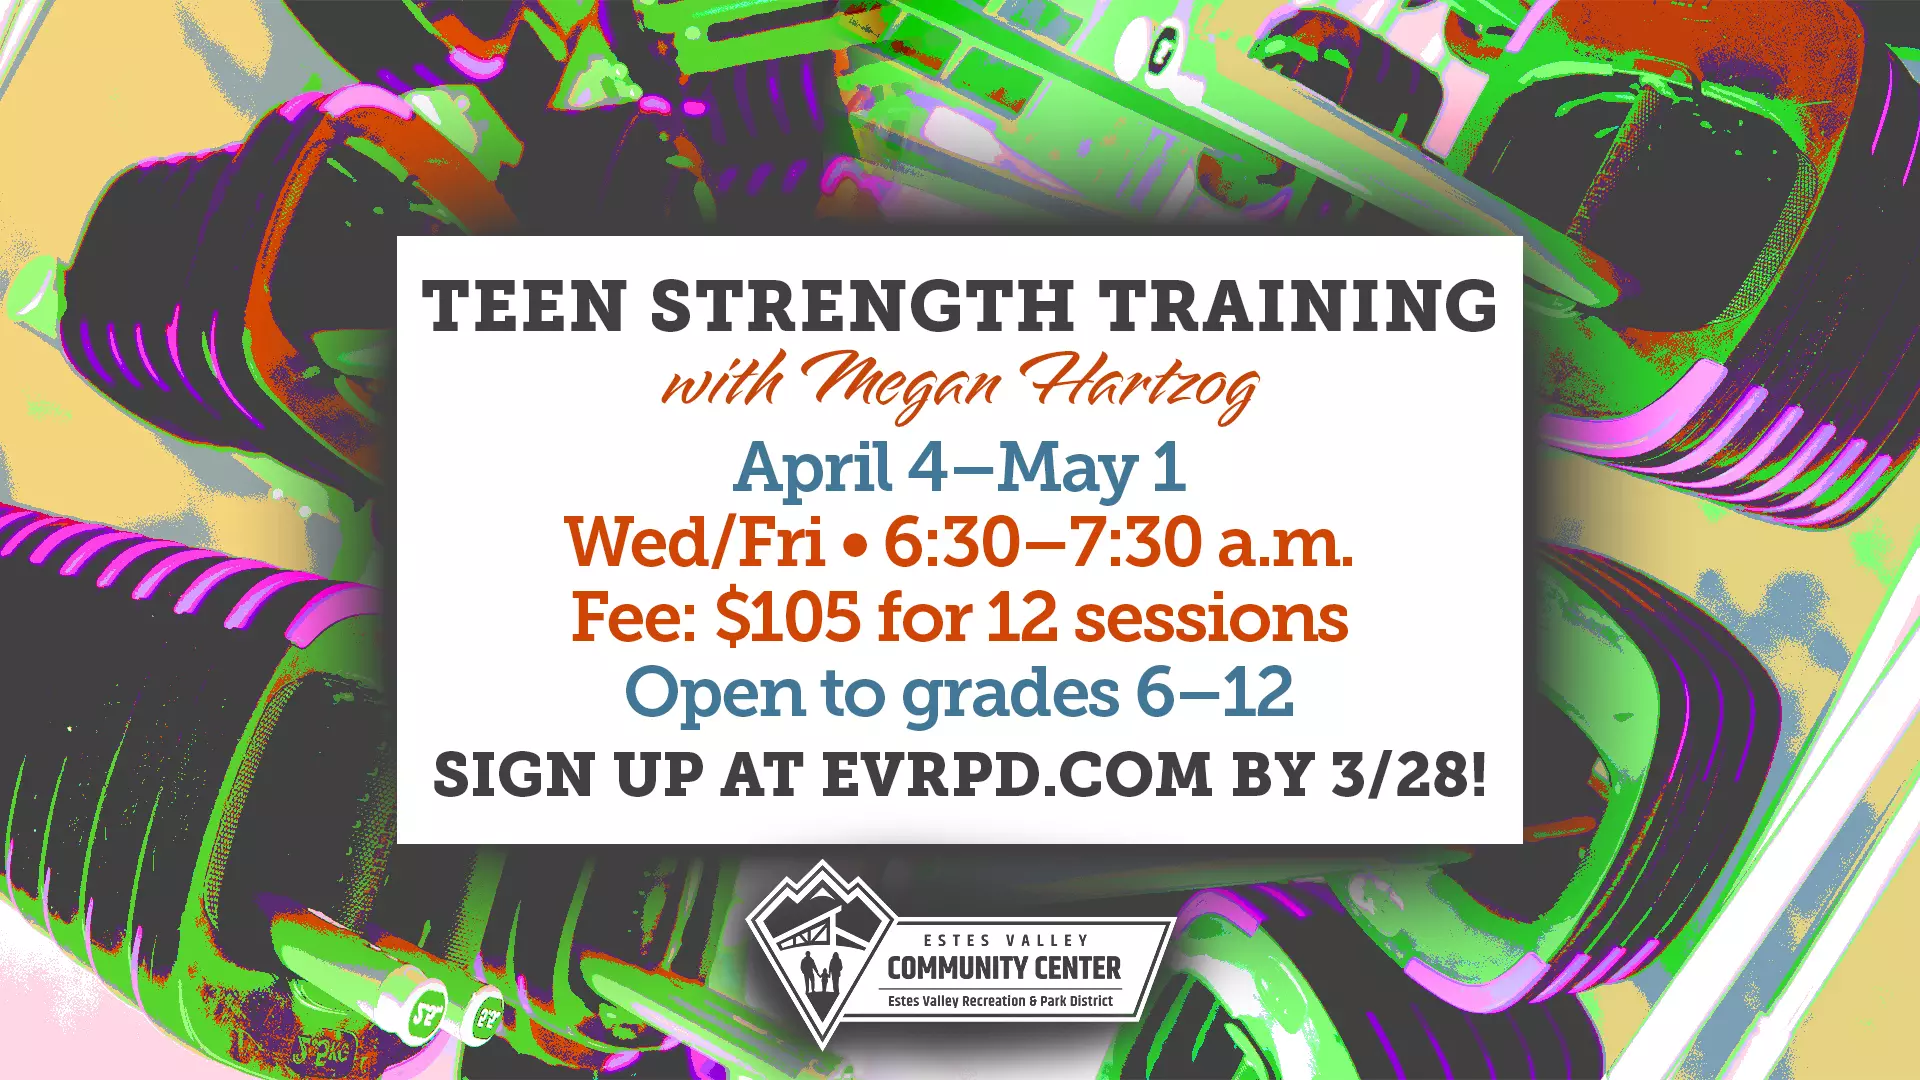 Strength training for grades 6-12